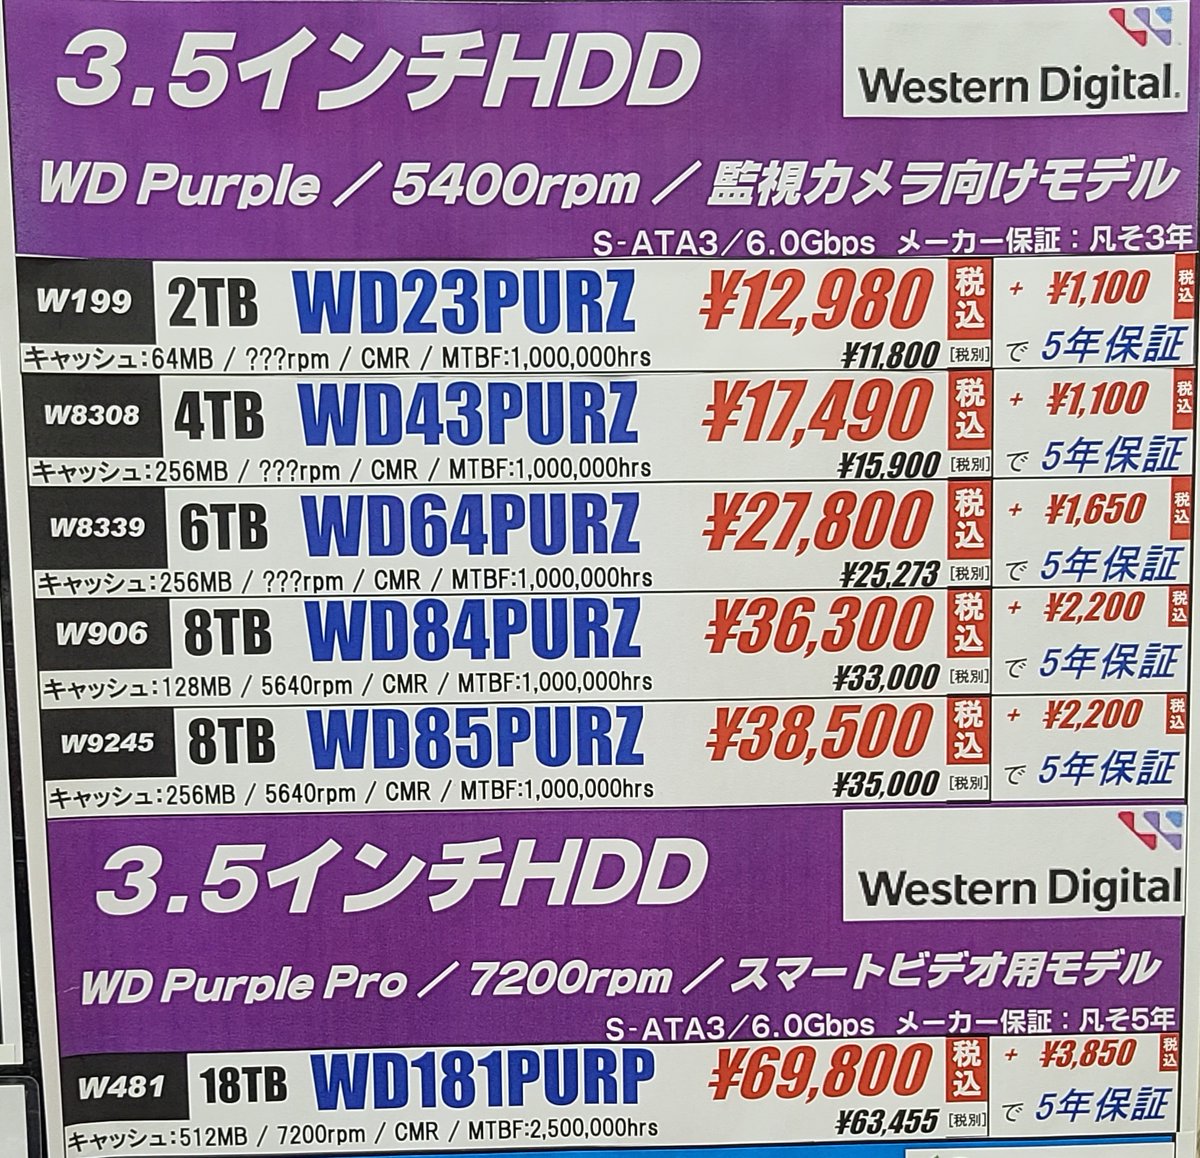 【デジモバ館 パーツコーナー】 3.5インチ HDD Western Digital 🟣WD Purple こちらの商品は監視システム用ストレージで人気です‼️ 最大64台のシングルストリームHDカメラをサポートし 最大100万時間のMTBF3を誇ります🦾 幅広い互換性があるので是非監視システムのパソコンにどうでしょうか⁉️